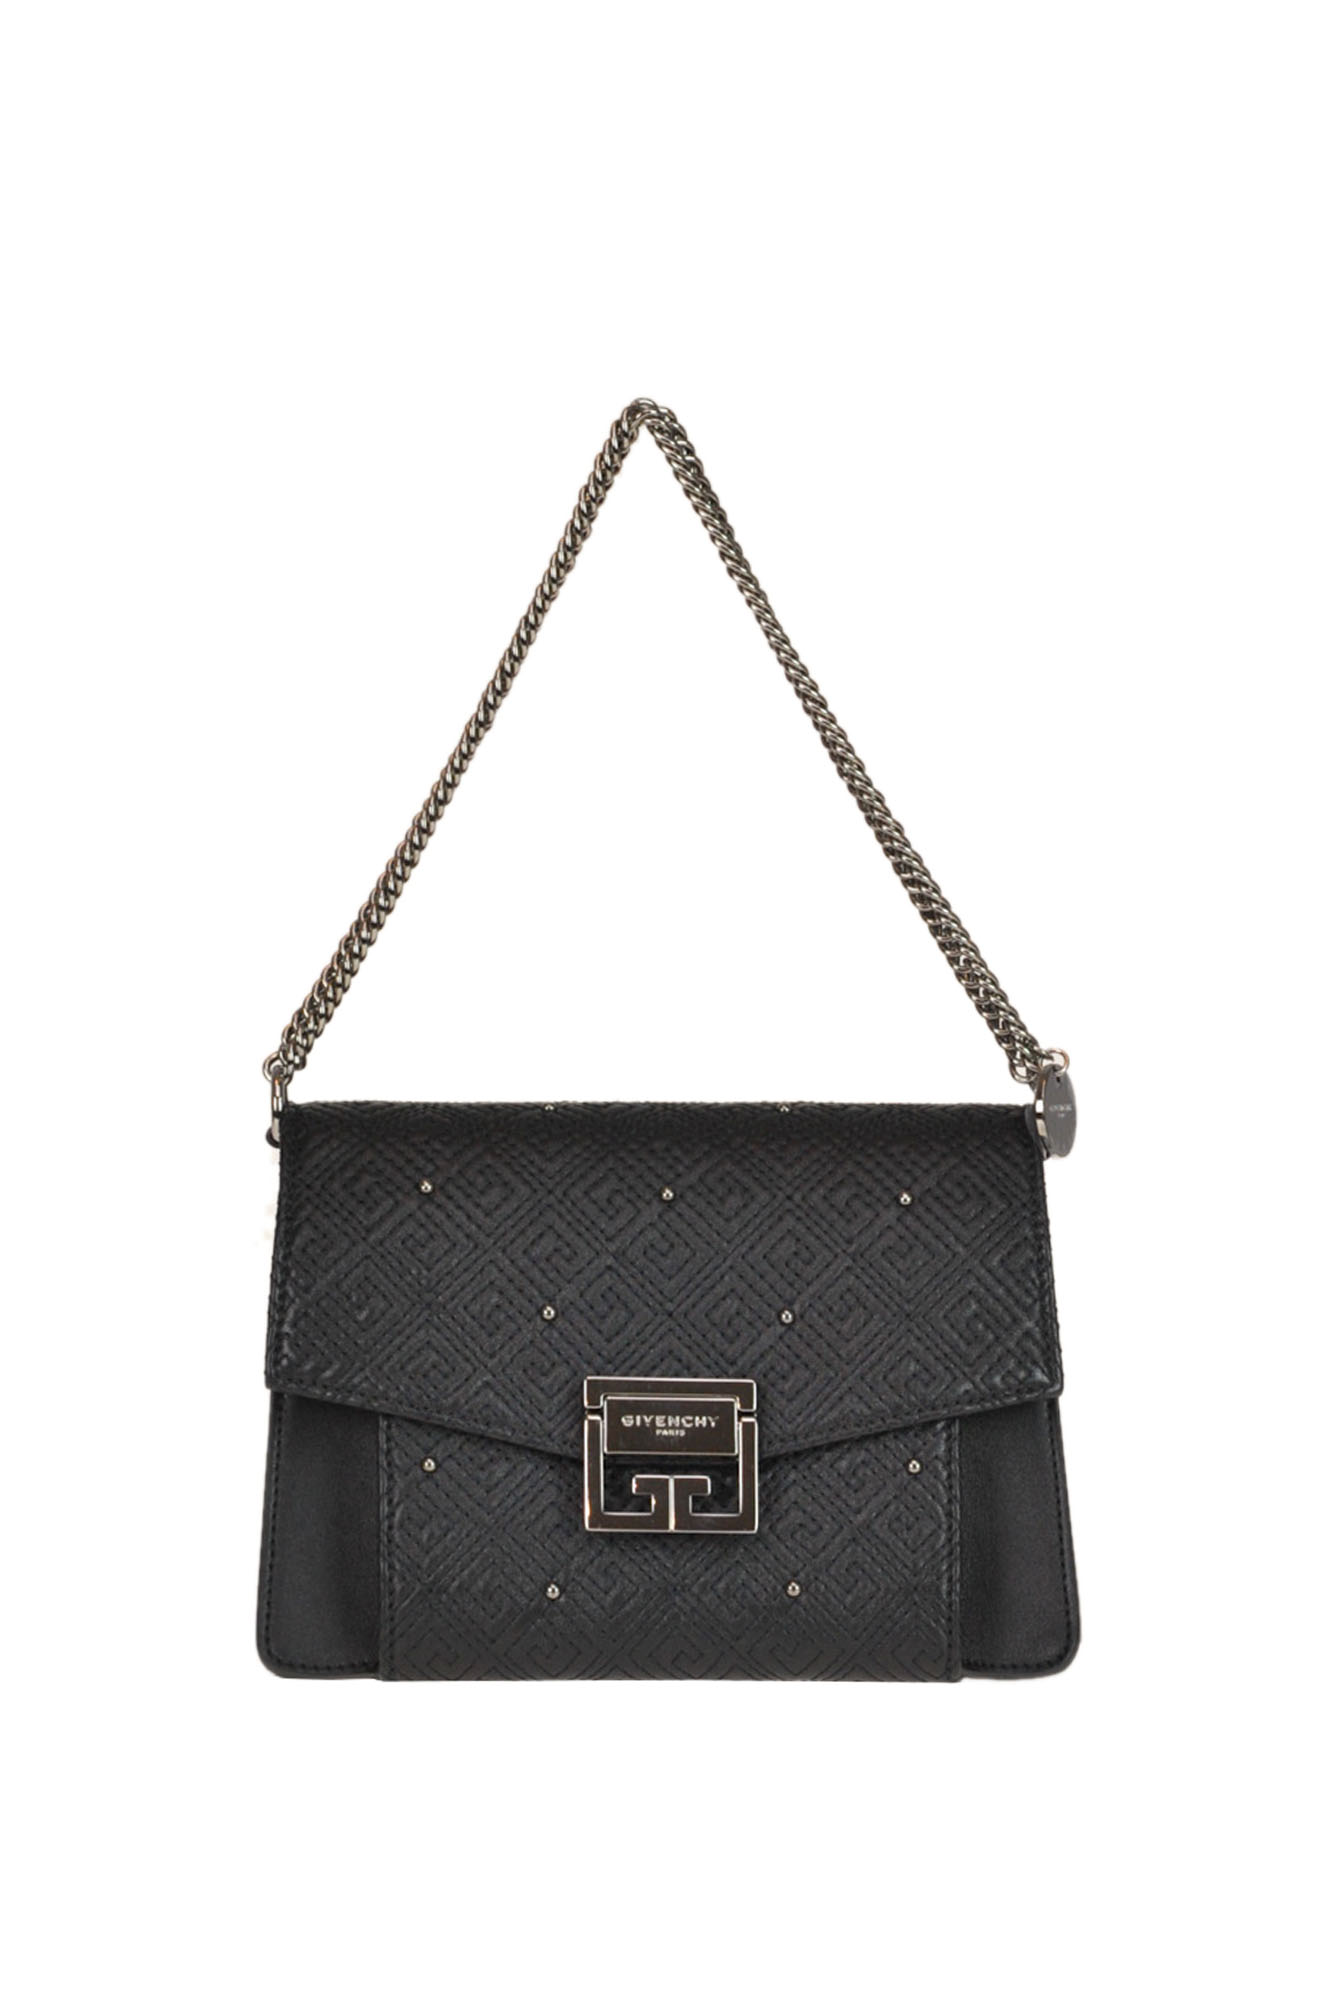 Givenchy Gv3 Embellished Leather Bag In Black